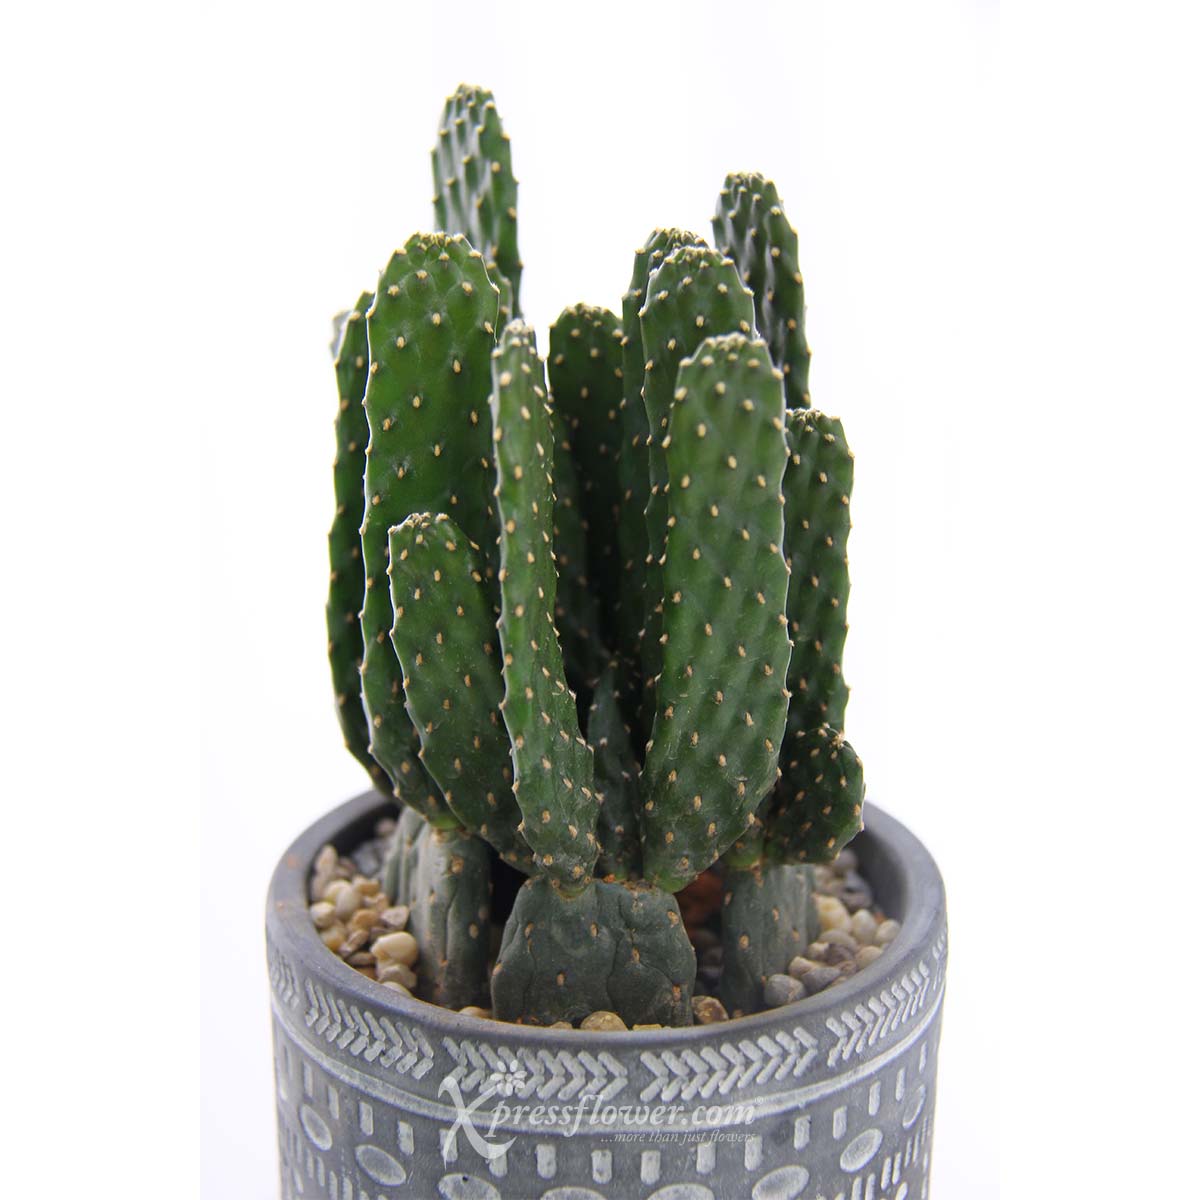 PS2114 Arizona Grace (Cactus) 1d